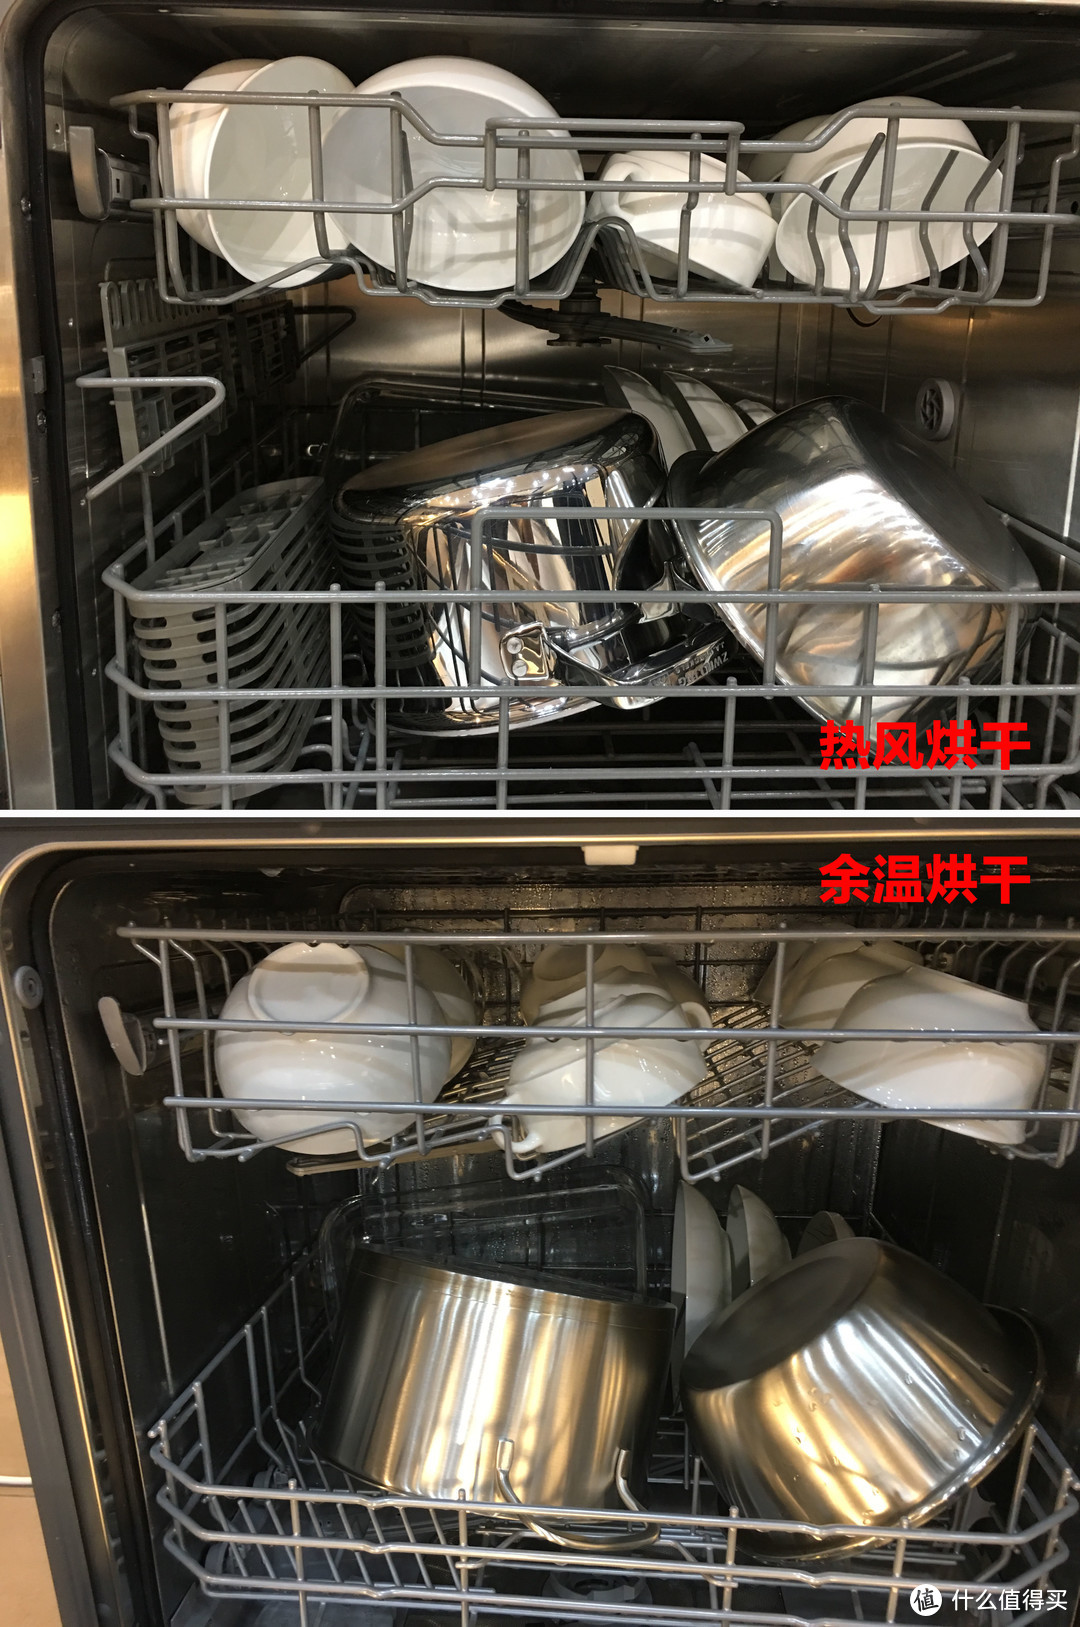 洗碗机替代消毒柜是噱头吗？洗碗机和消毒柜之间应该如何取舍？